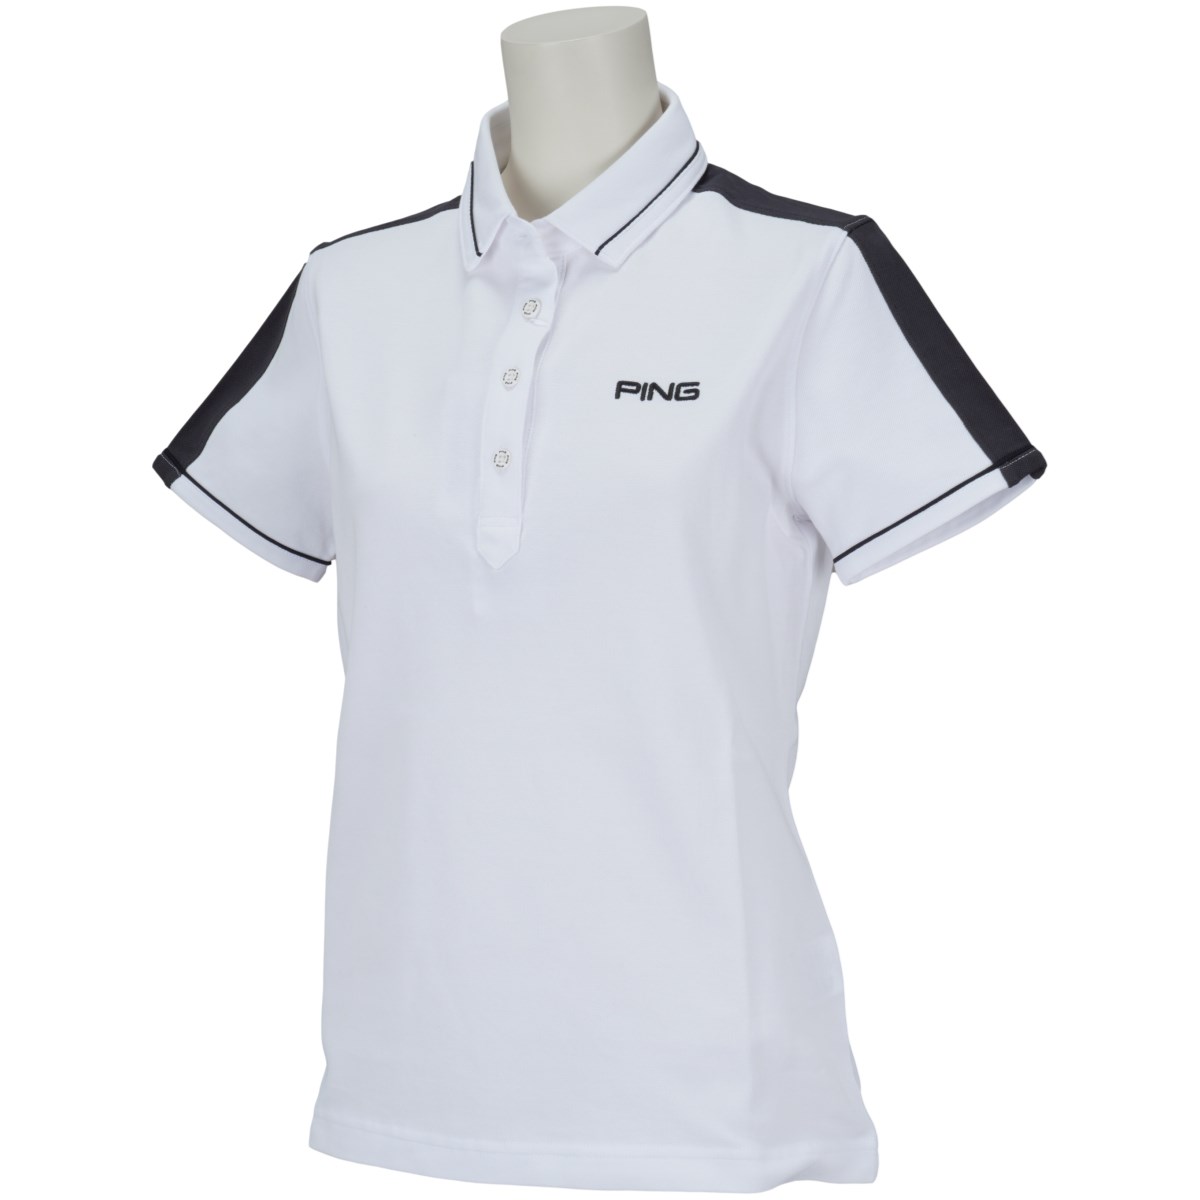 [アウトレット] [在庫限りのお買い得商品] ピン PING 半袖ポロシャツ ホワイト 030 レディース ゴルフウェア